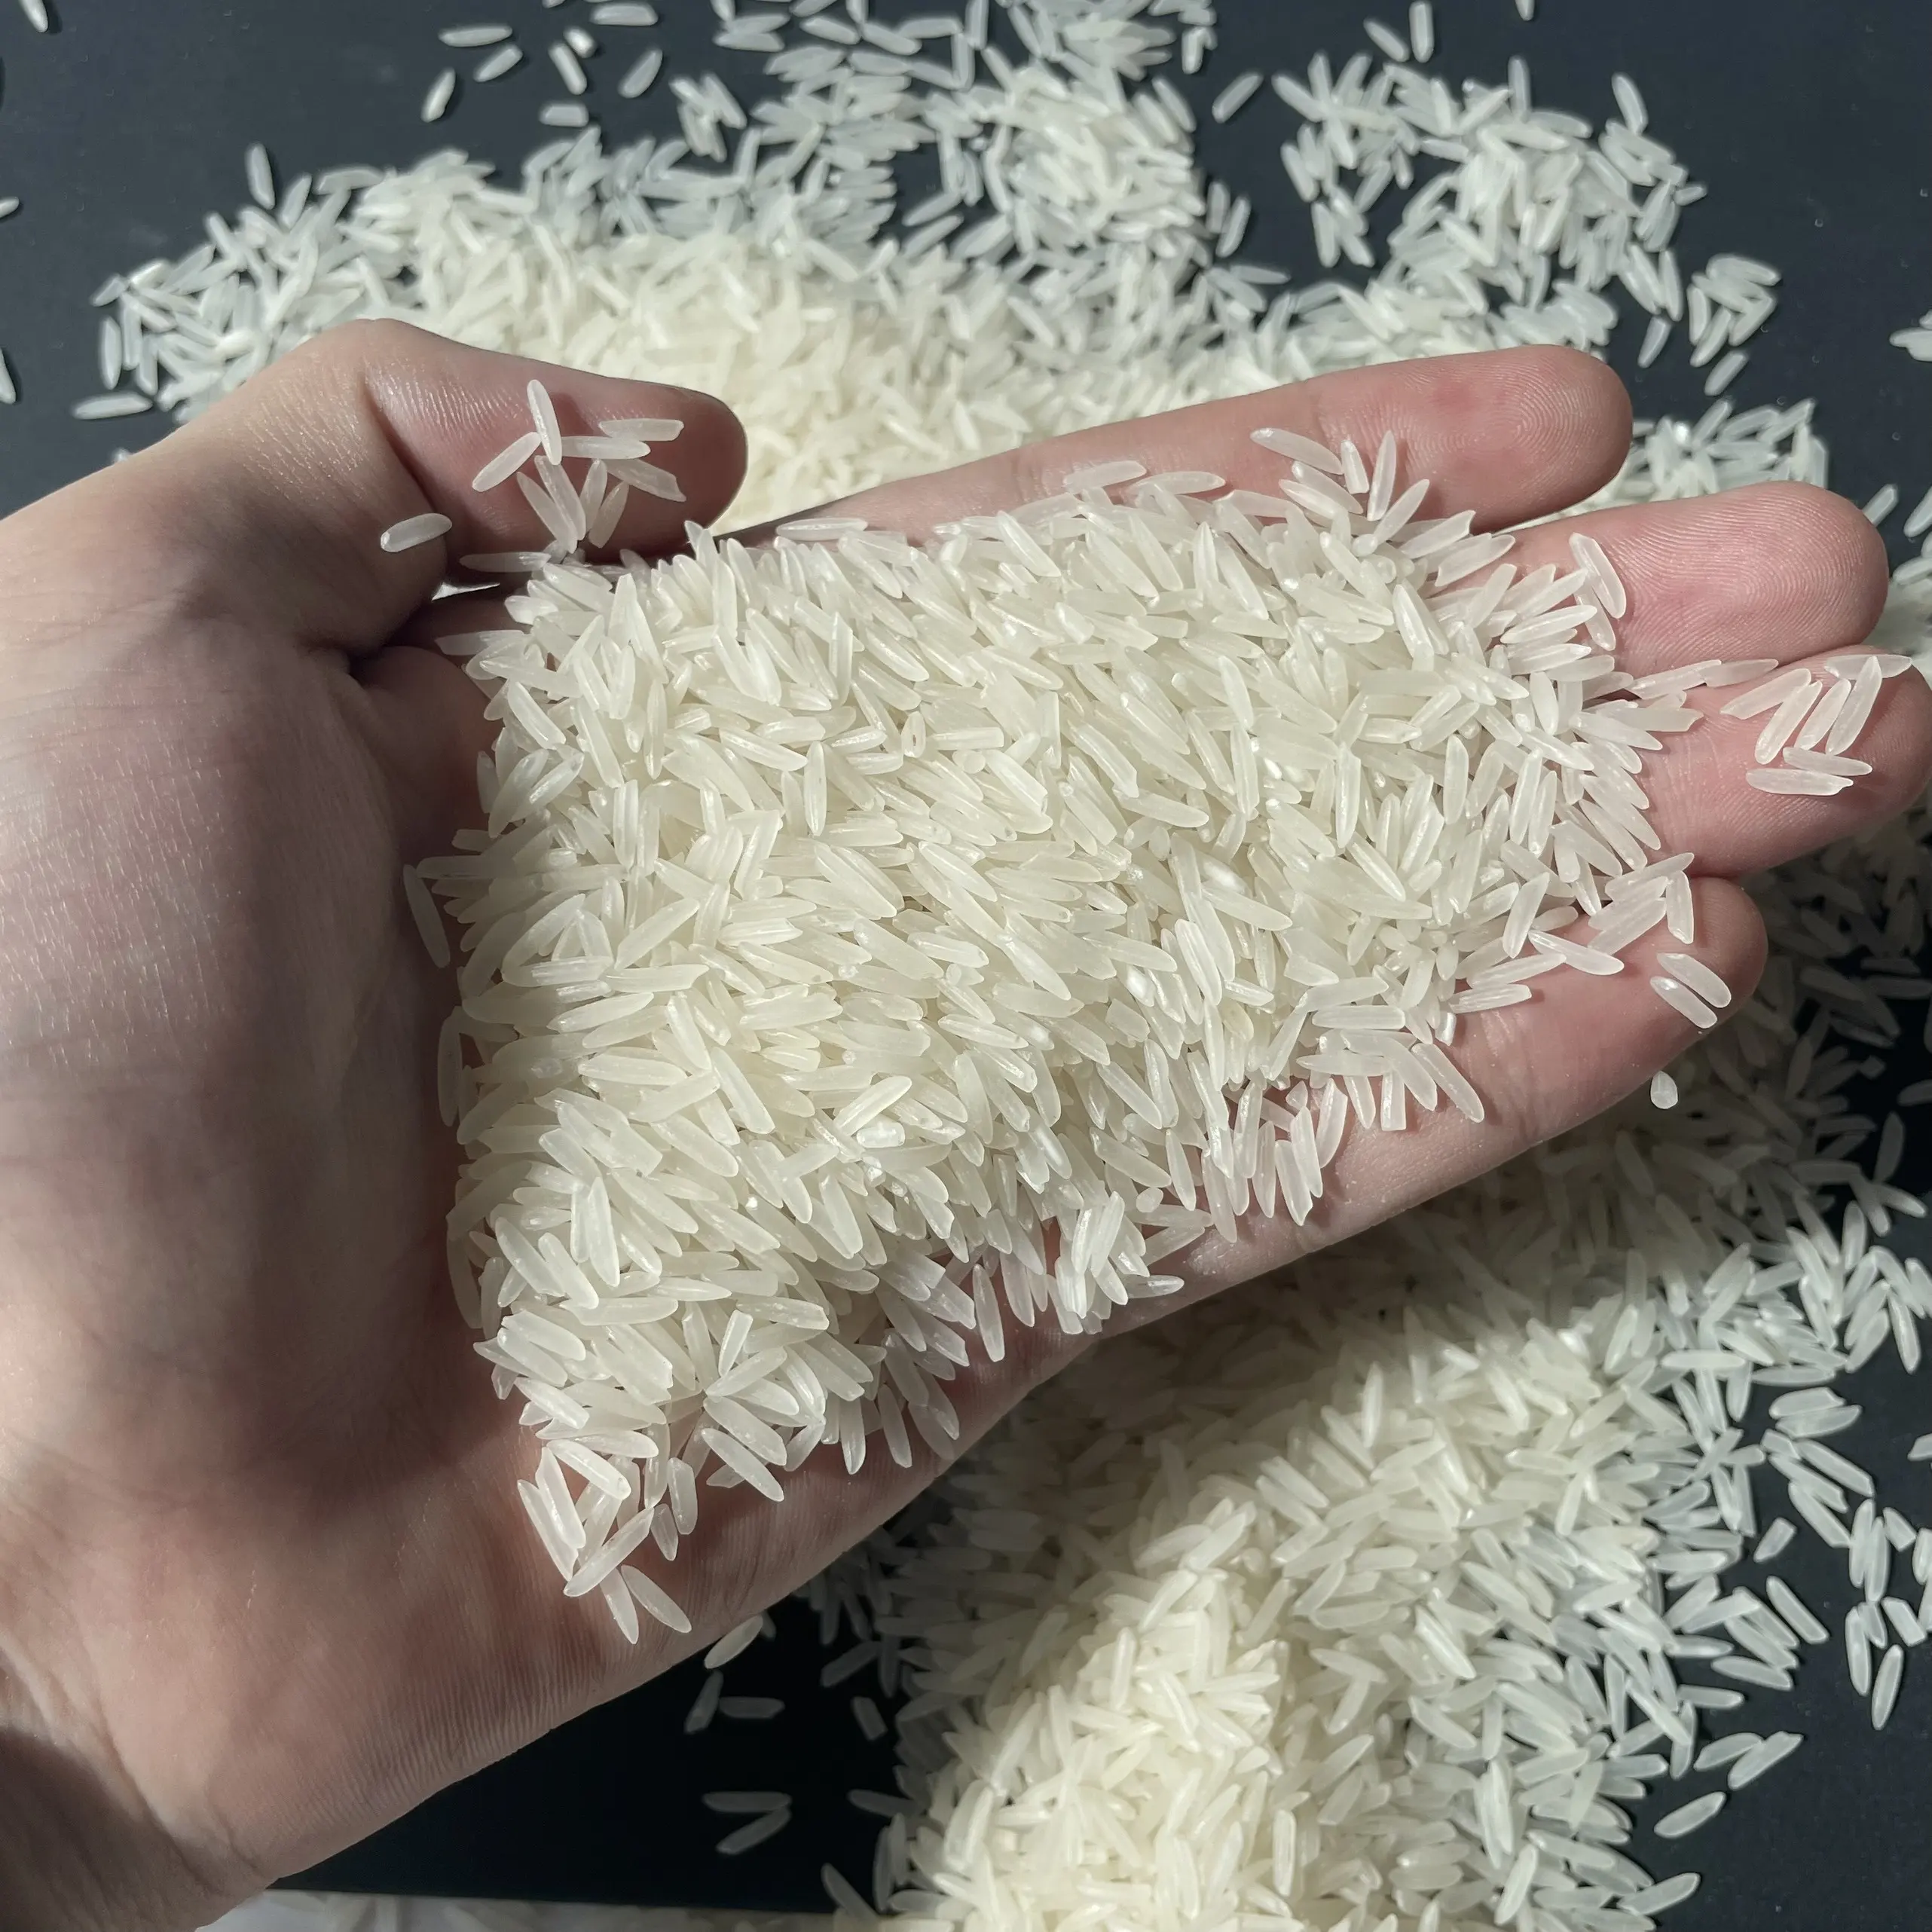 Arroz st25 vietnamita de grão longo, arroz branco 5% quebrado com a exportação do vietnã todos os produtos